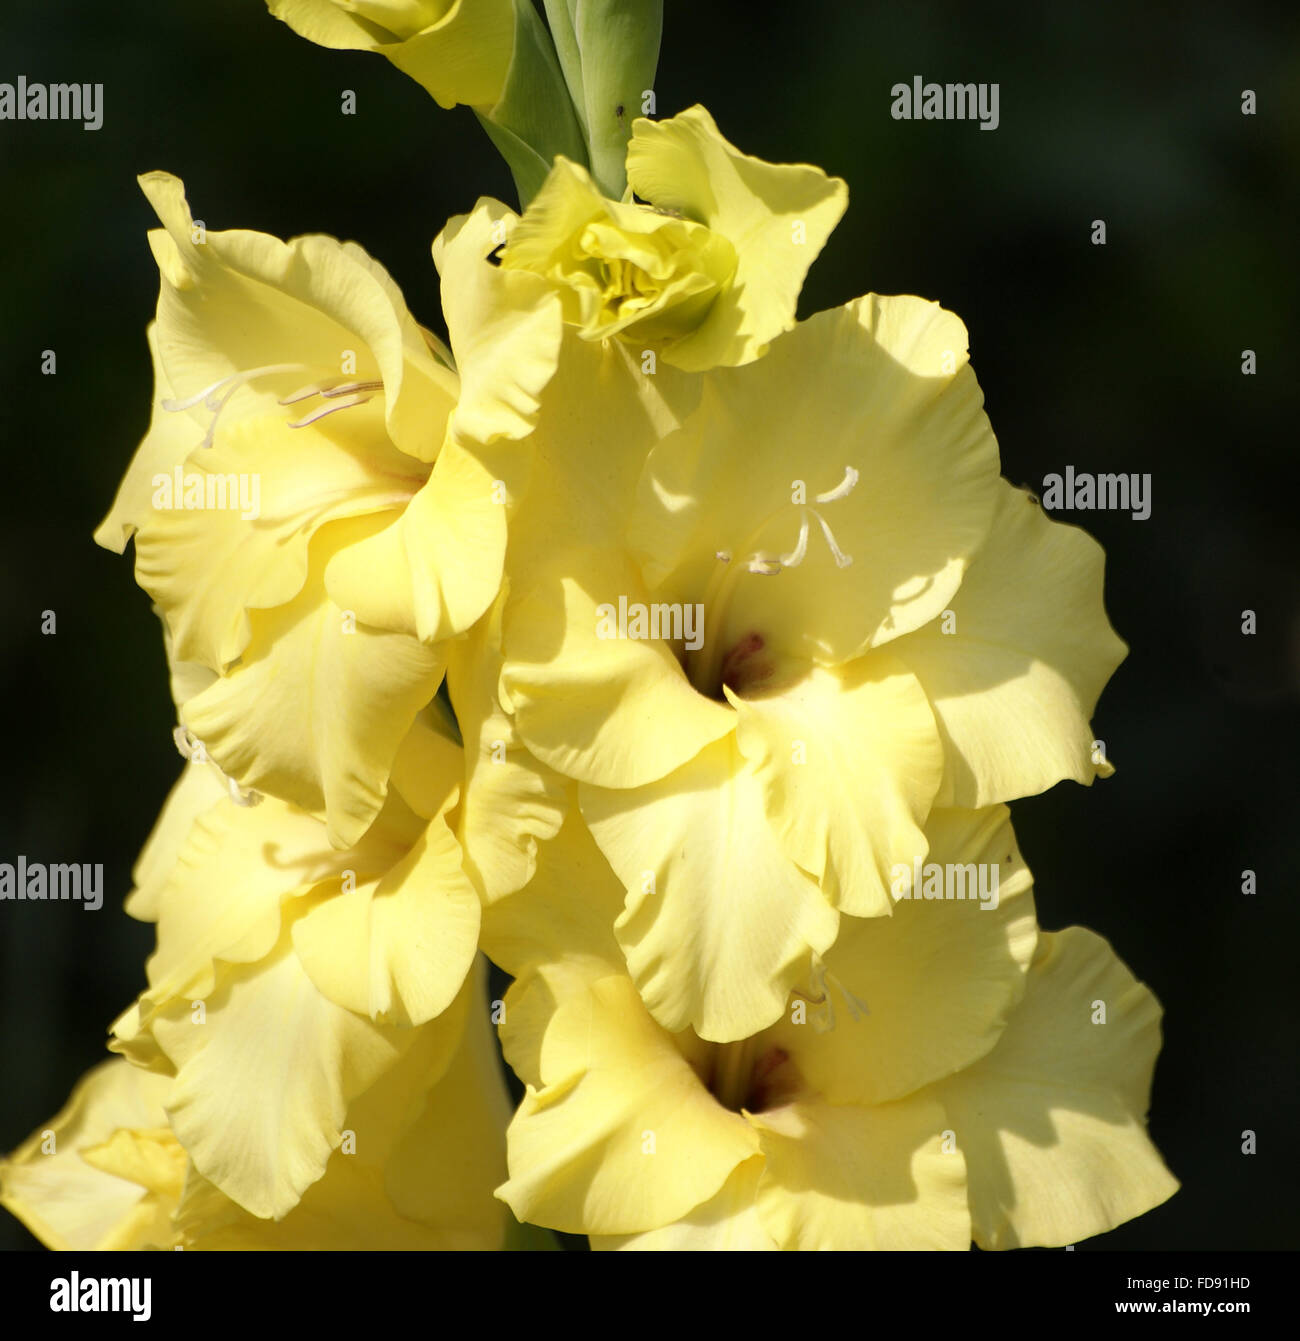 Gladiolus, popolari erbe ornamentali con metropolitana globose corm, foglie lineari e di splendidi fiori in picchi di forma allungata Foto Stock